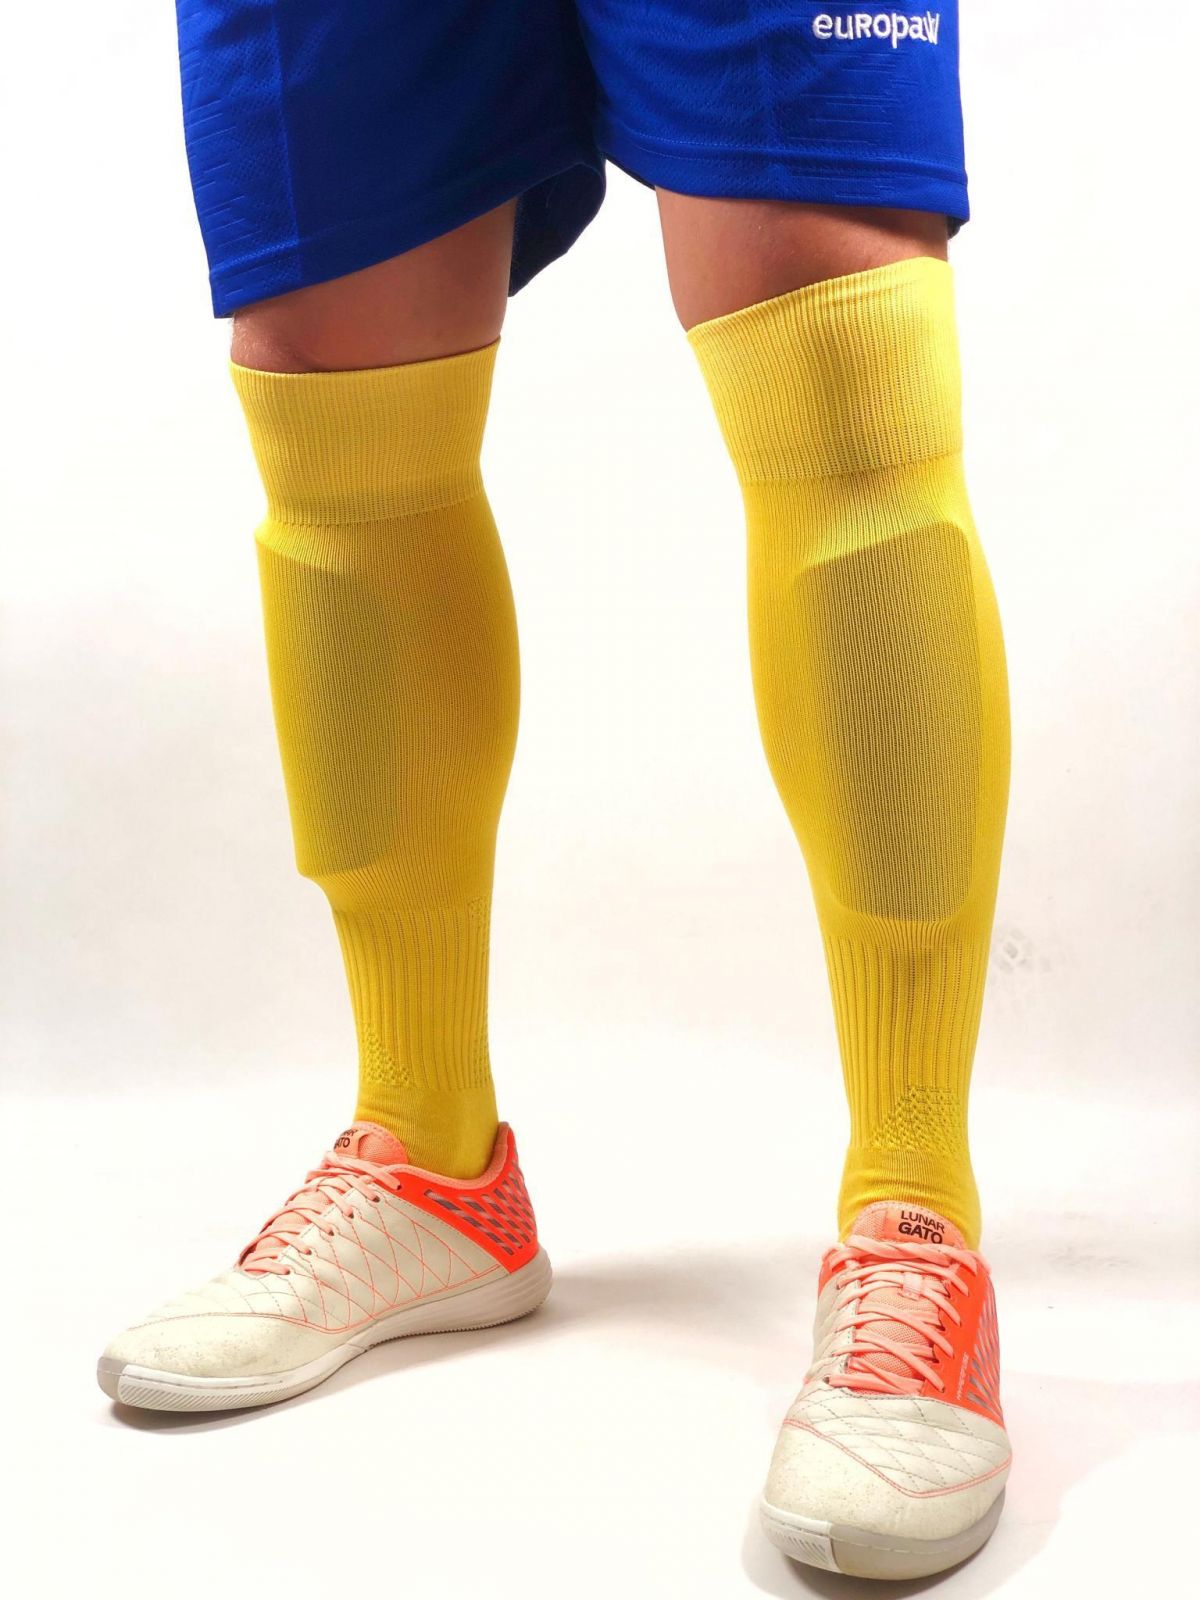 Гетри футбольні Europaw жовті з трикотажним носком